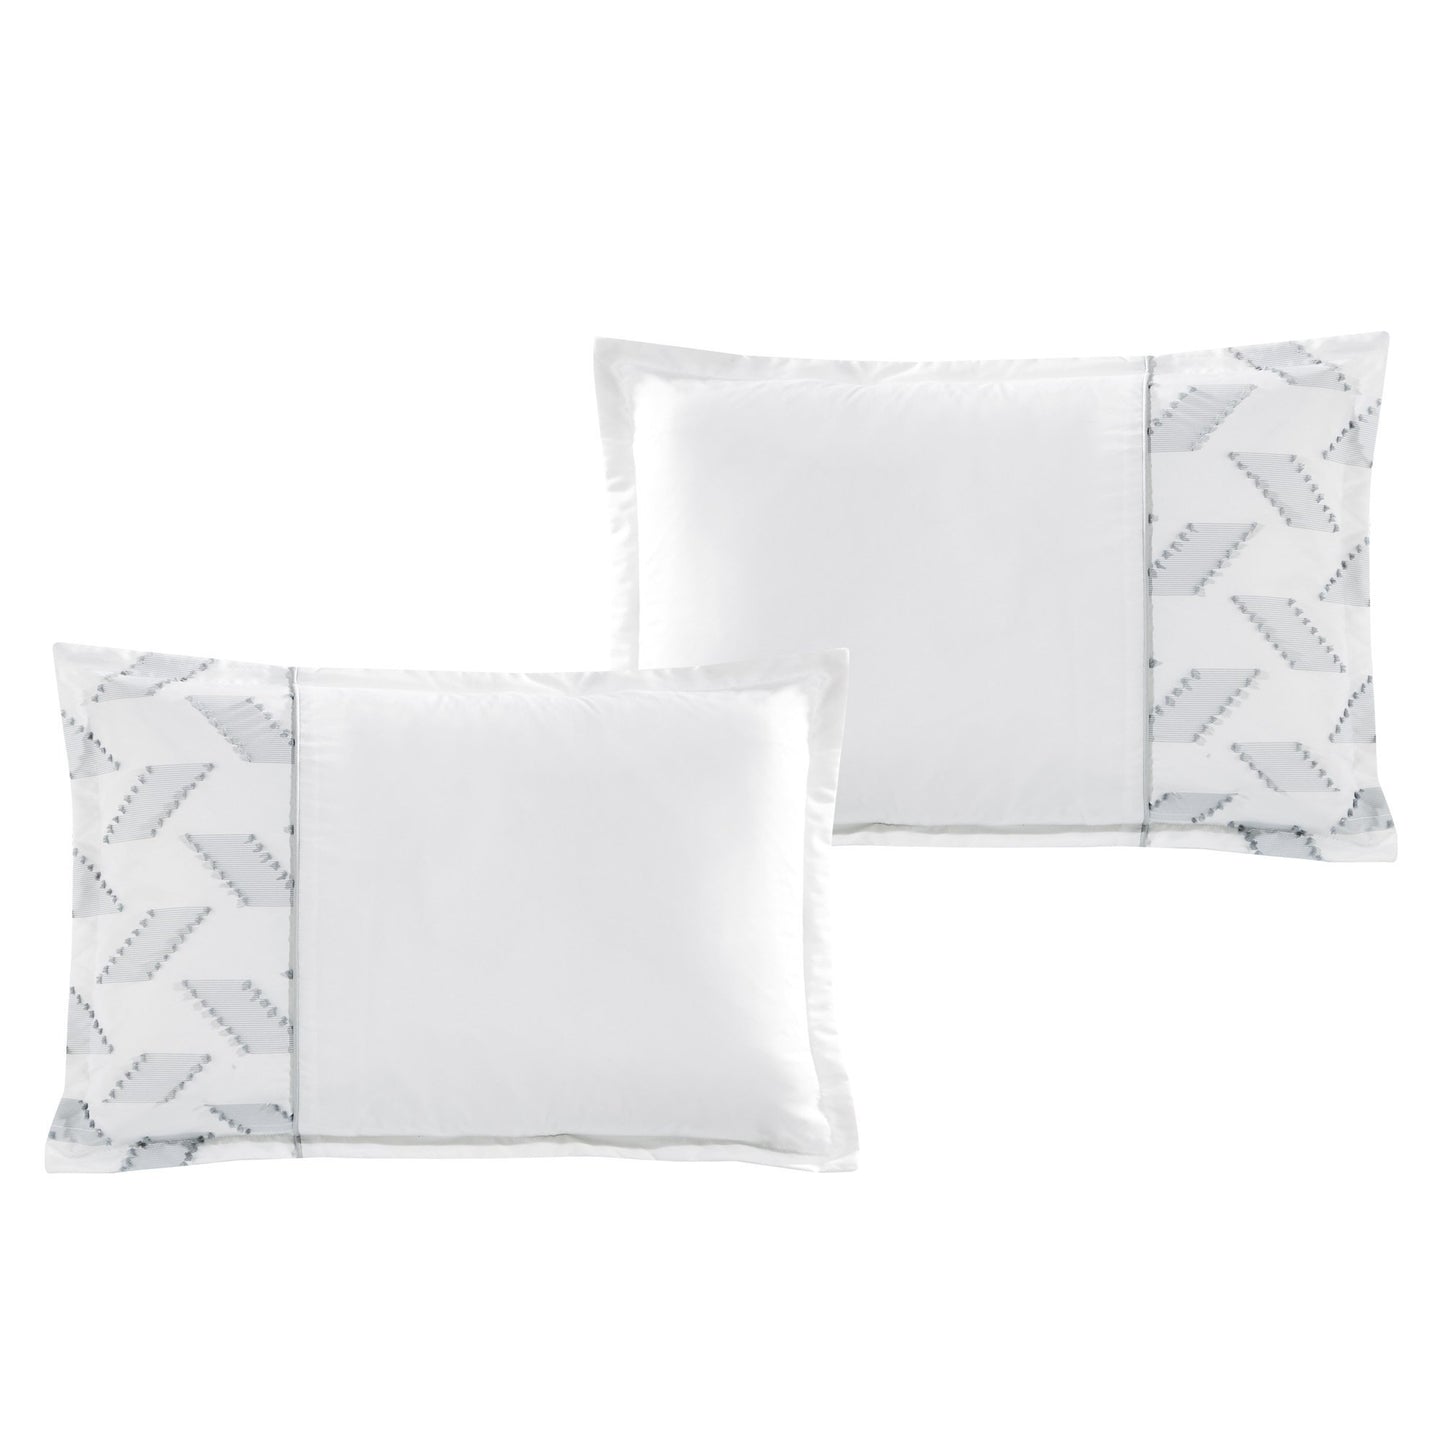 Cozy Contemporary White Comforter Set - 7 Piece Set